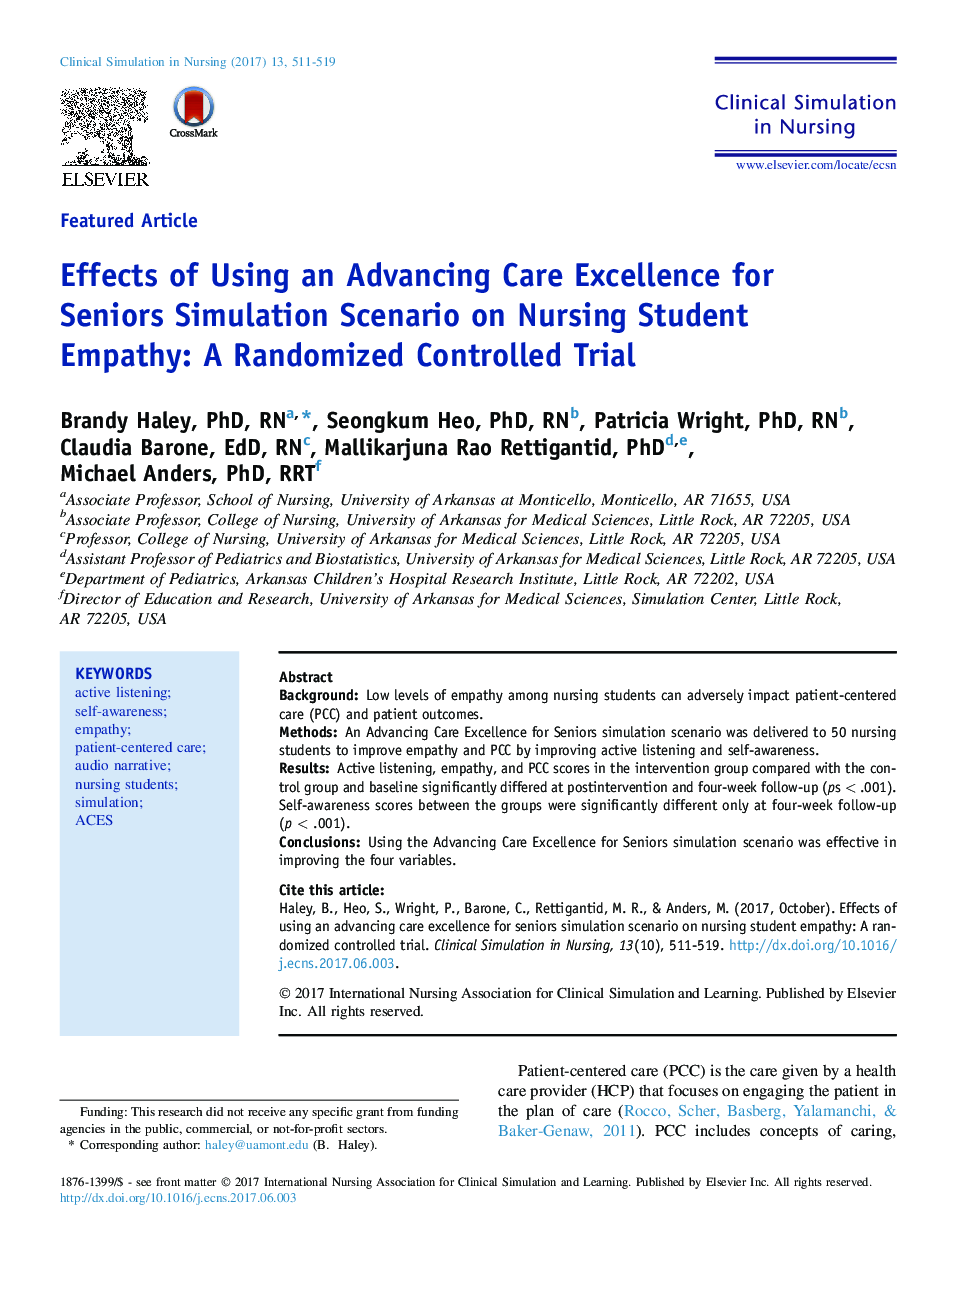 تأثیر استفاده از پیشرفت مراقبت از پیشرفت برای سناریوی شبیه سازی سالمندان بر همدلی دانشجویان پرستاری: یک آزمایش تصادفی کنترل شده 